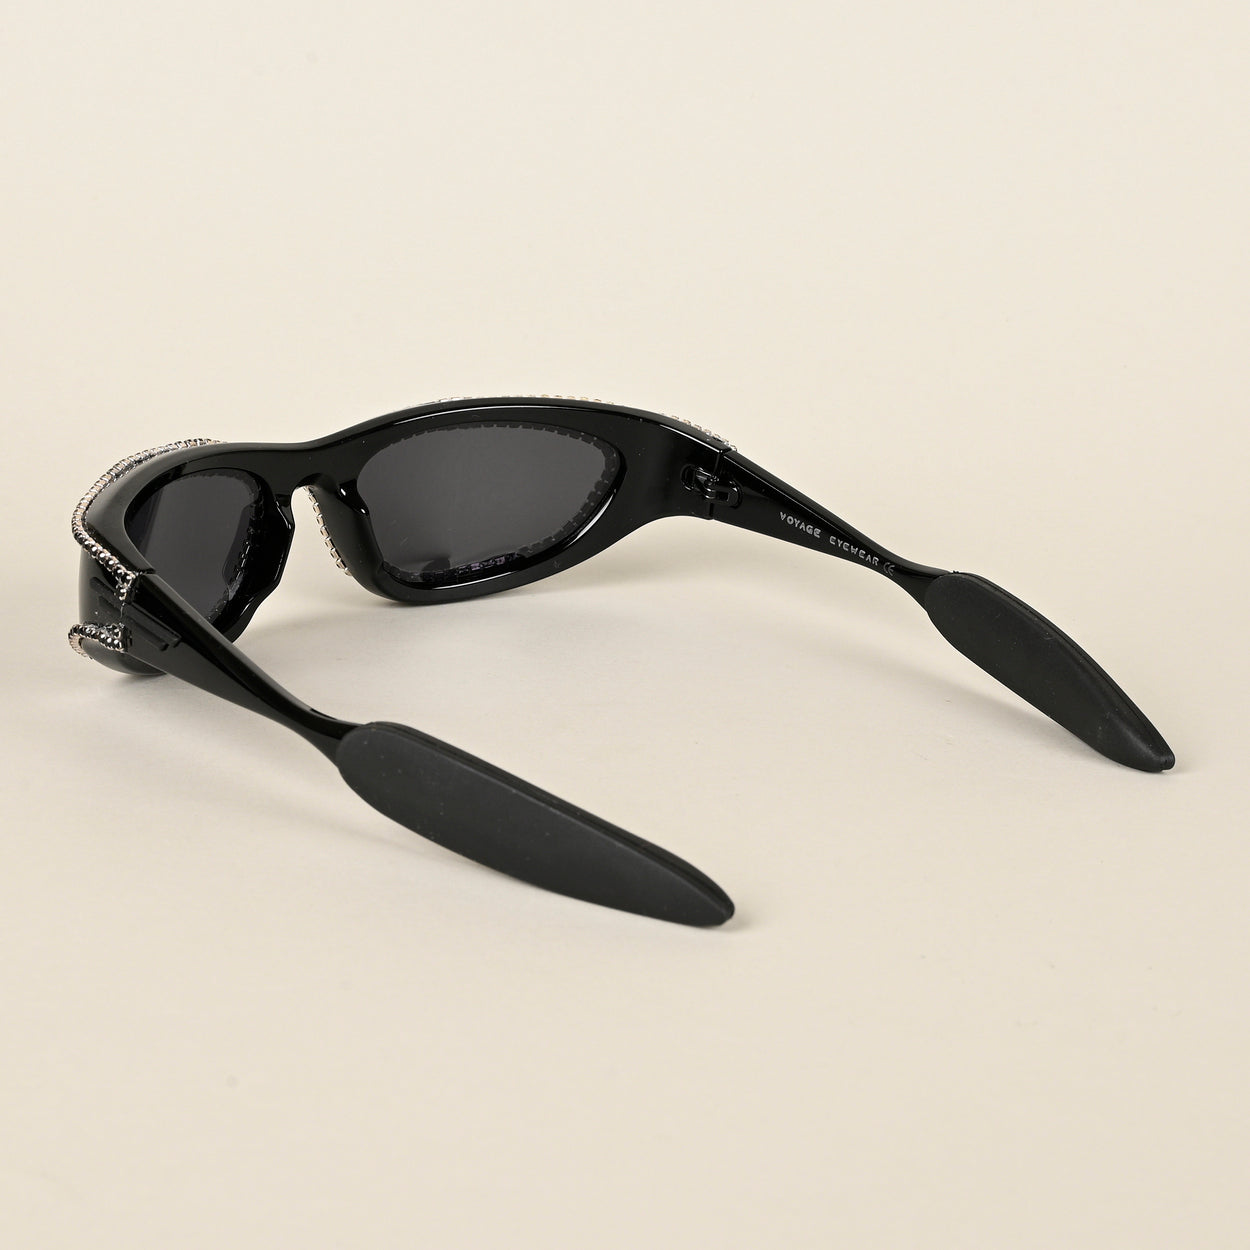 Voyage Black Wrap-Around Polarized Sunglasses for Men & Women - PMG4364